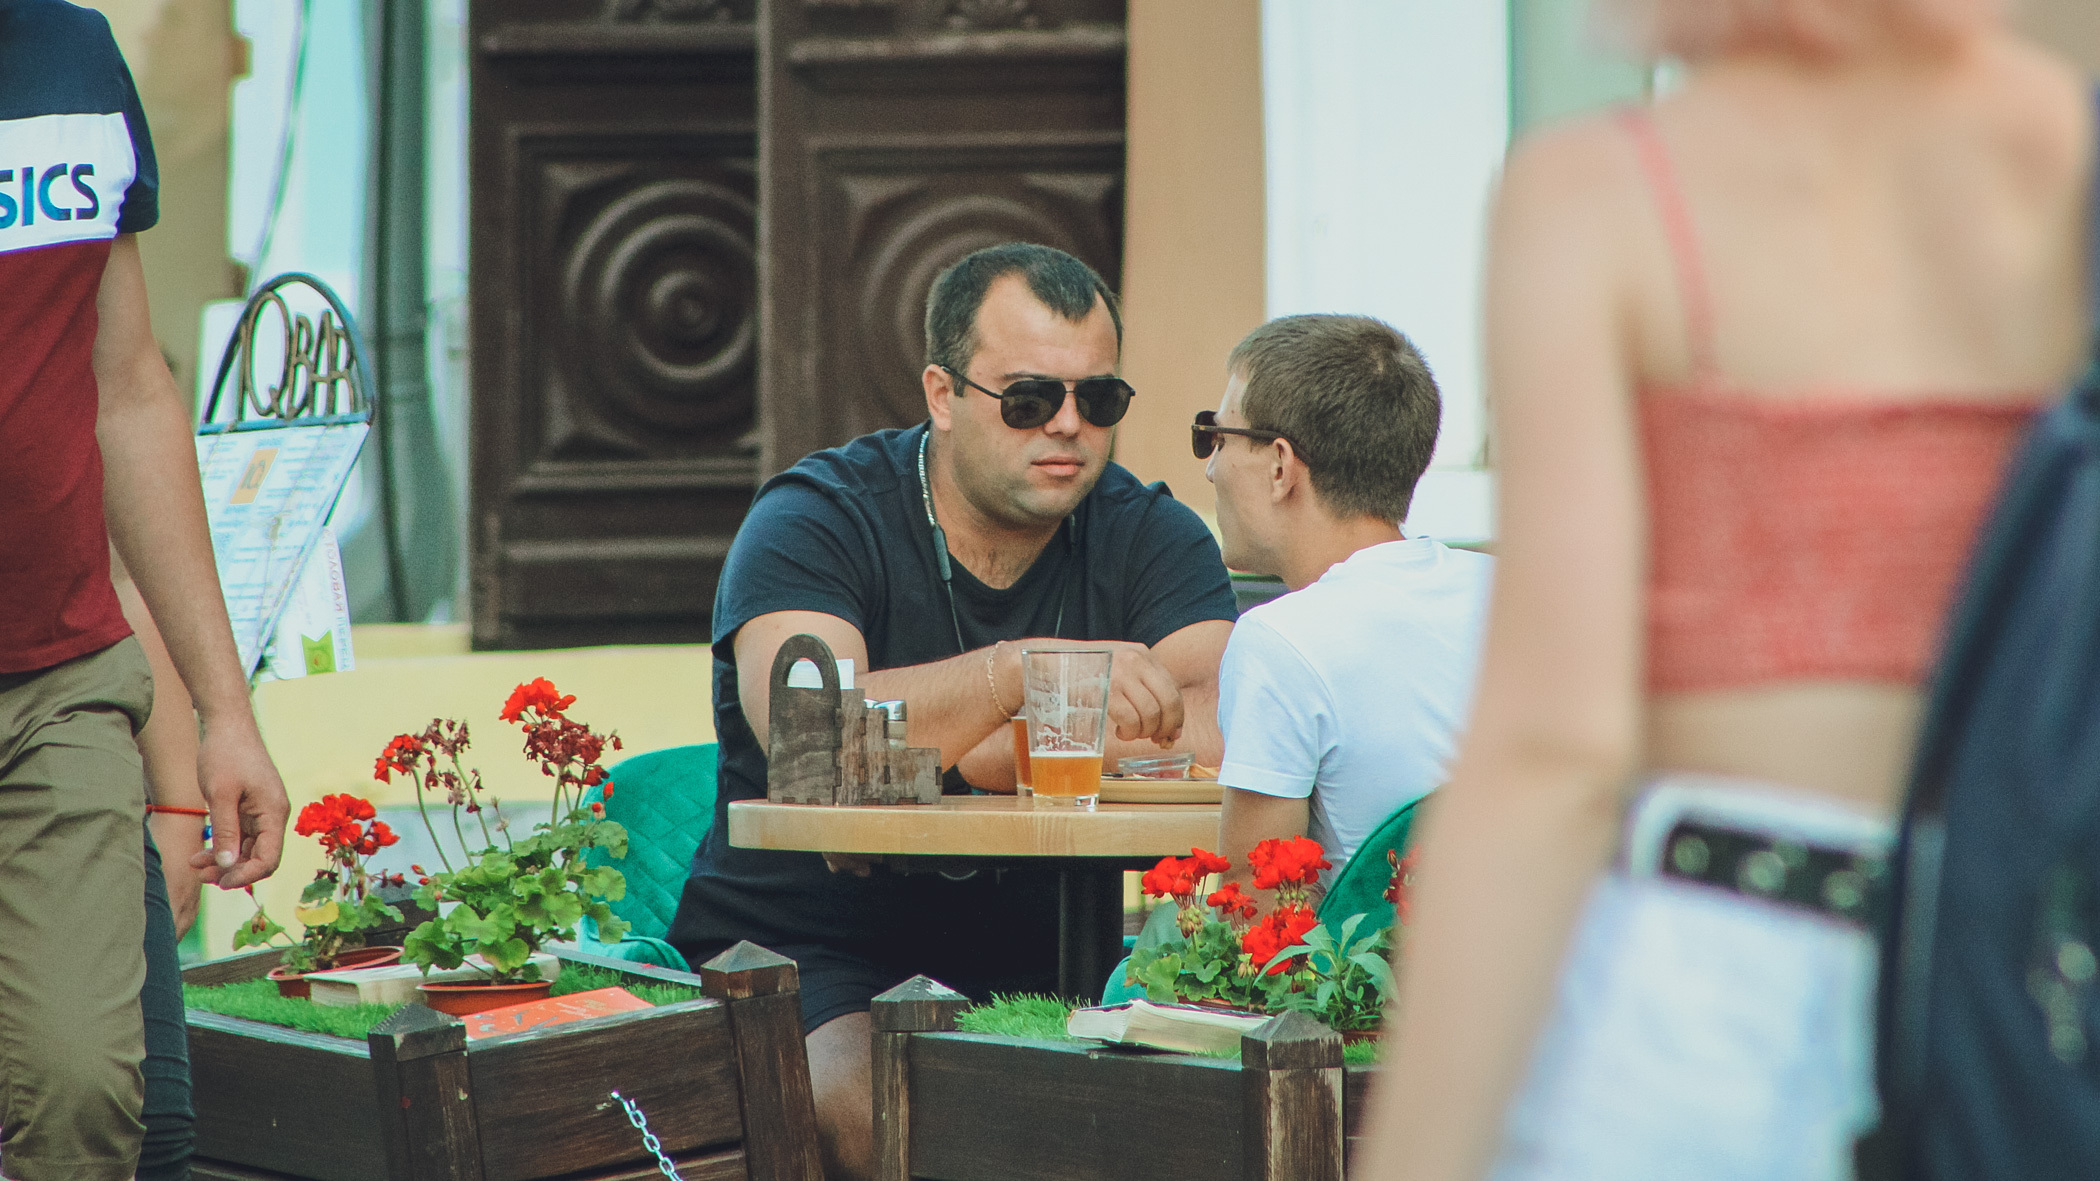 Ставропольские рестораны готовятся к переходу на онлайн-заказы из-за коронакризиса